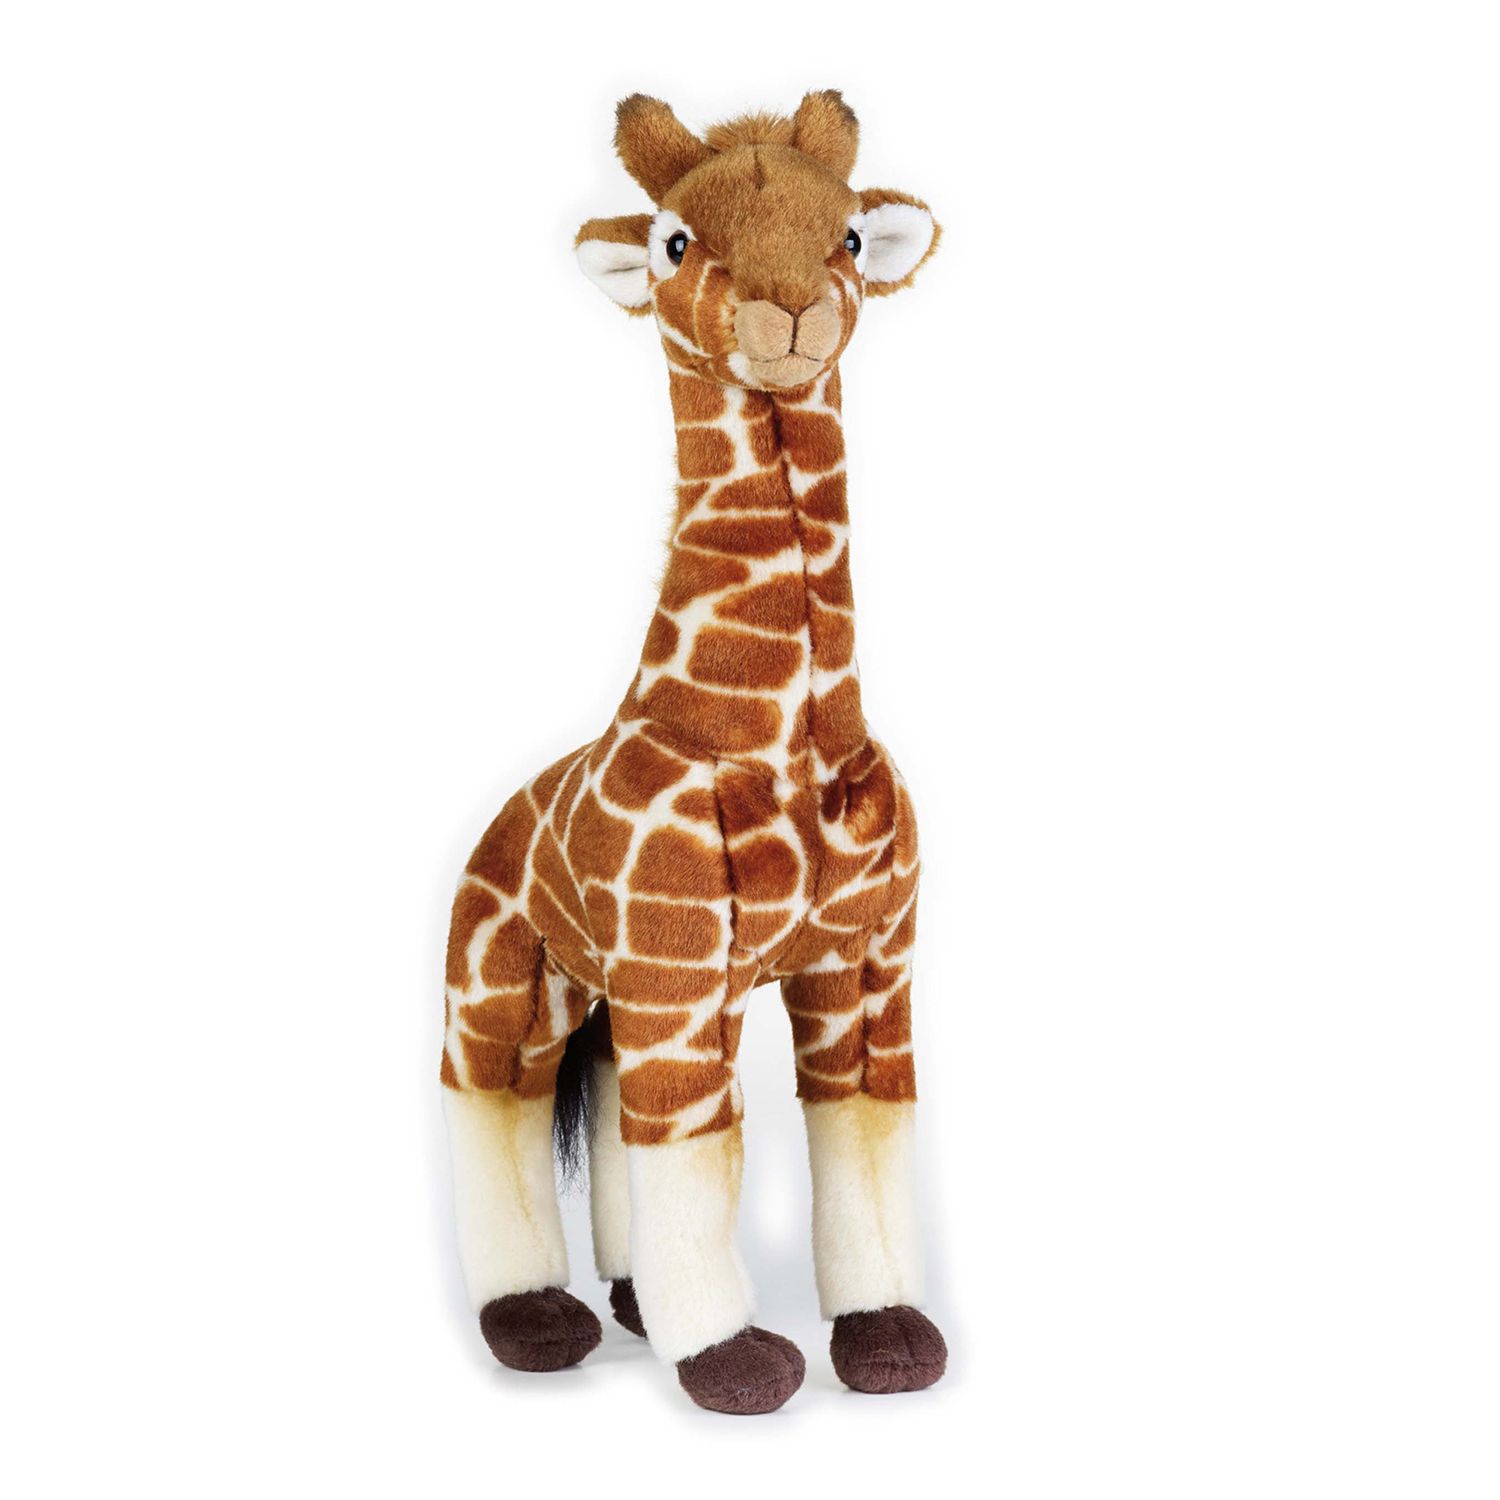 5ft stuffed giraffe